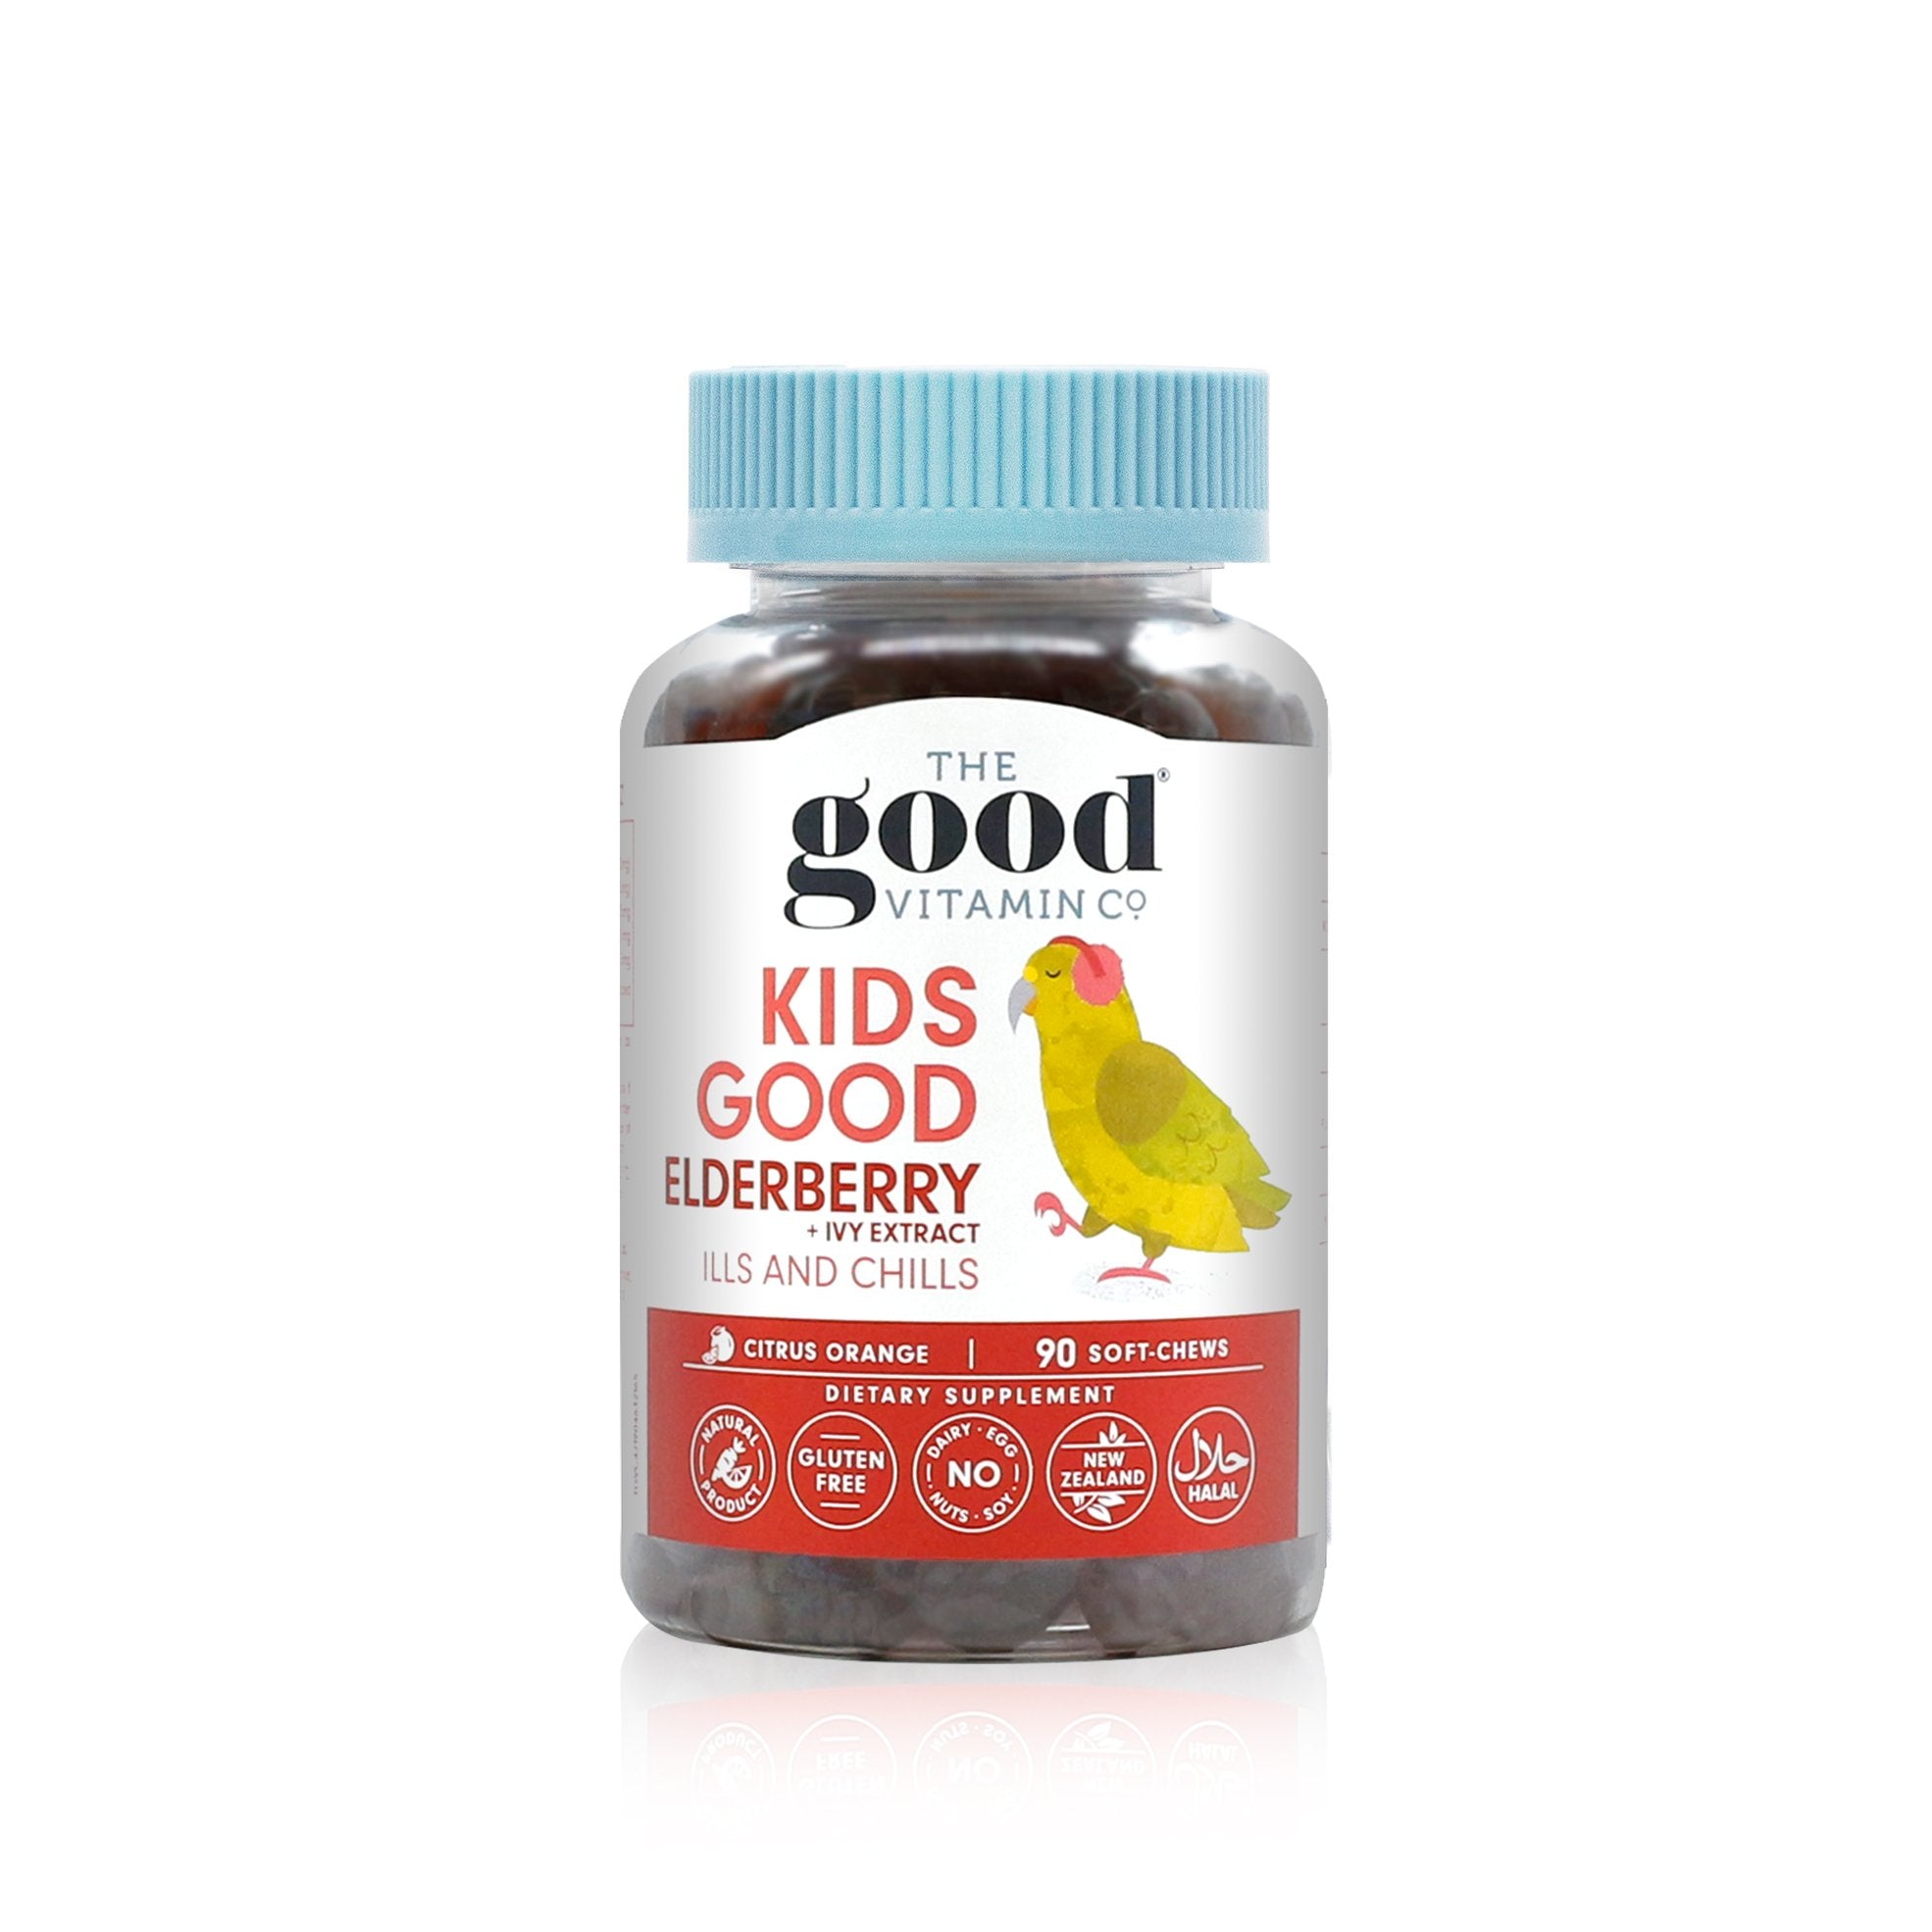 The Good Vitamin Co. Health - Children's Health Good Kids Elderberry Supplement + Vitamin C Immunity 90 Soft-Chews